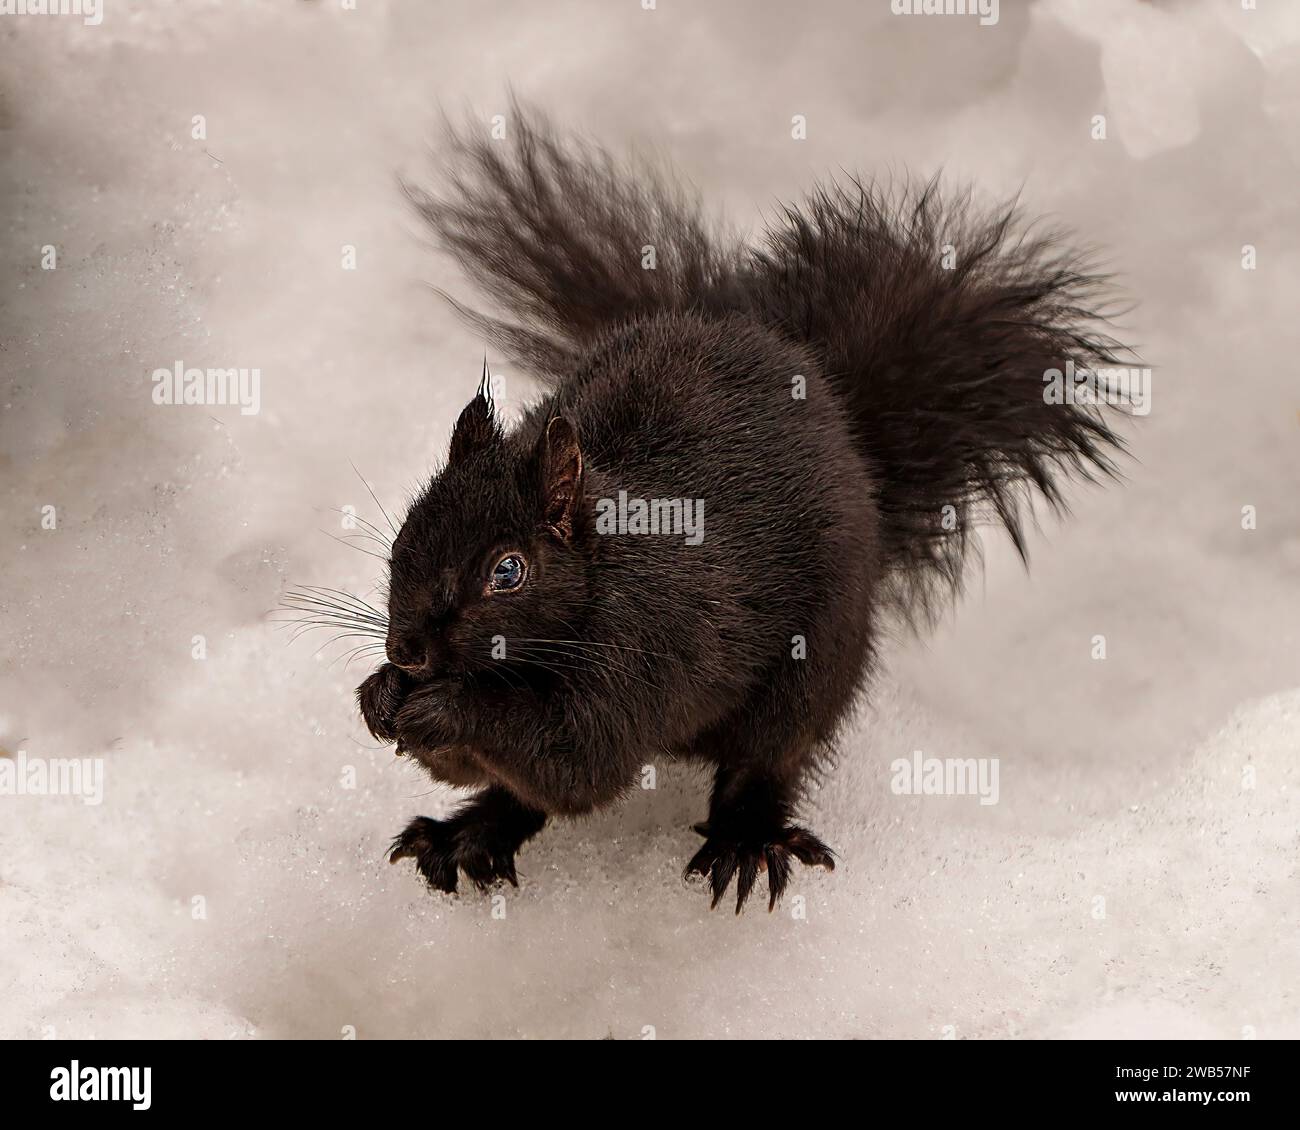 Schwarzes Eichhörnchen aus nächster Nähe im Winter auf Schnee in seiner Umgebung und seinem Lebensraum mit schwarzer Farbe und buschigem Schwanz. Stockfoto